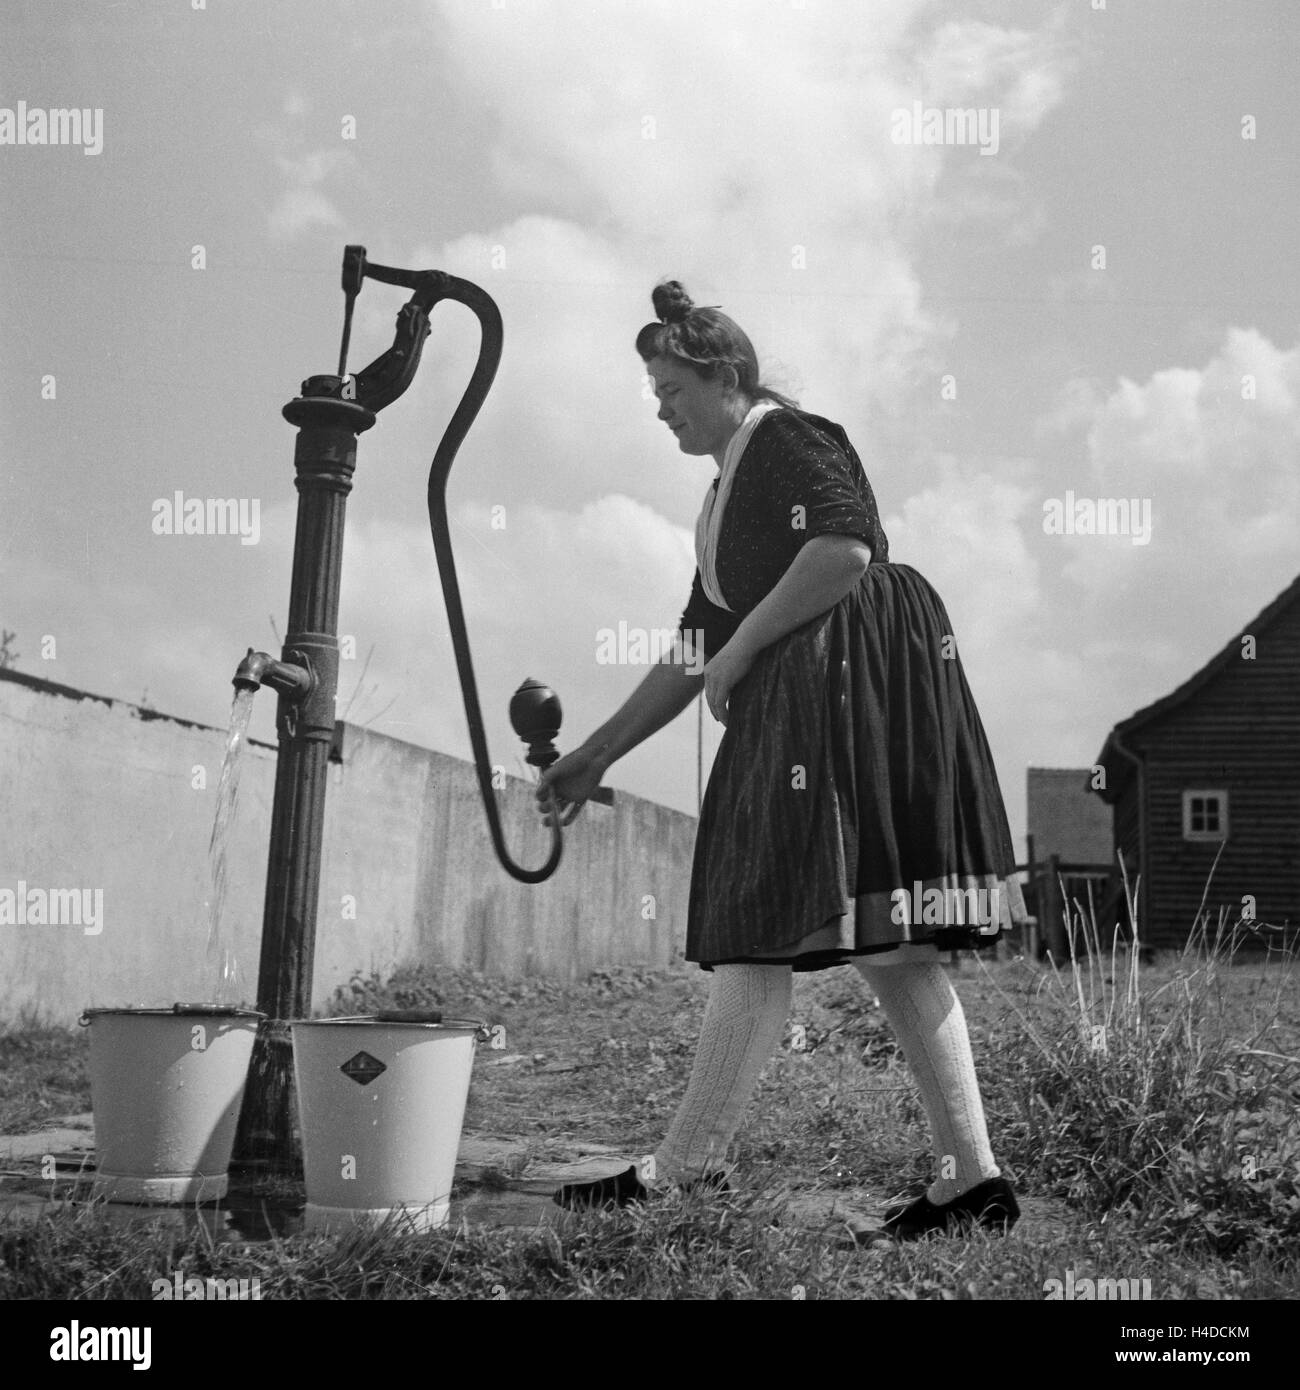 Eine Frau in der Tracht des Schwalm Eder Kreises holt Wasser am Pumpbrunnen, Deutschland 1930er Jahre. A woman wearing the array of the Schwalm Eder district pumping for water from a well, Germany 1930s. Stock Photo